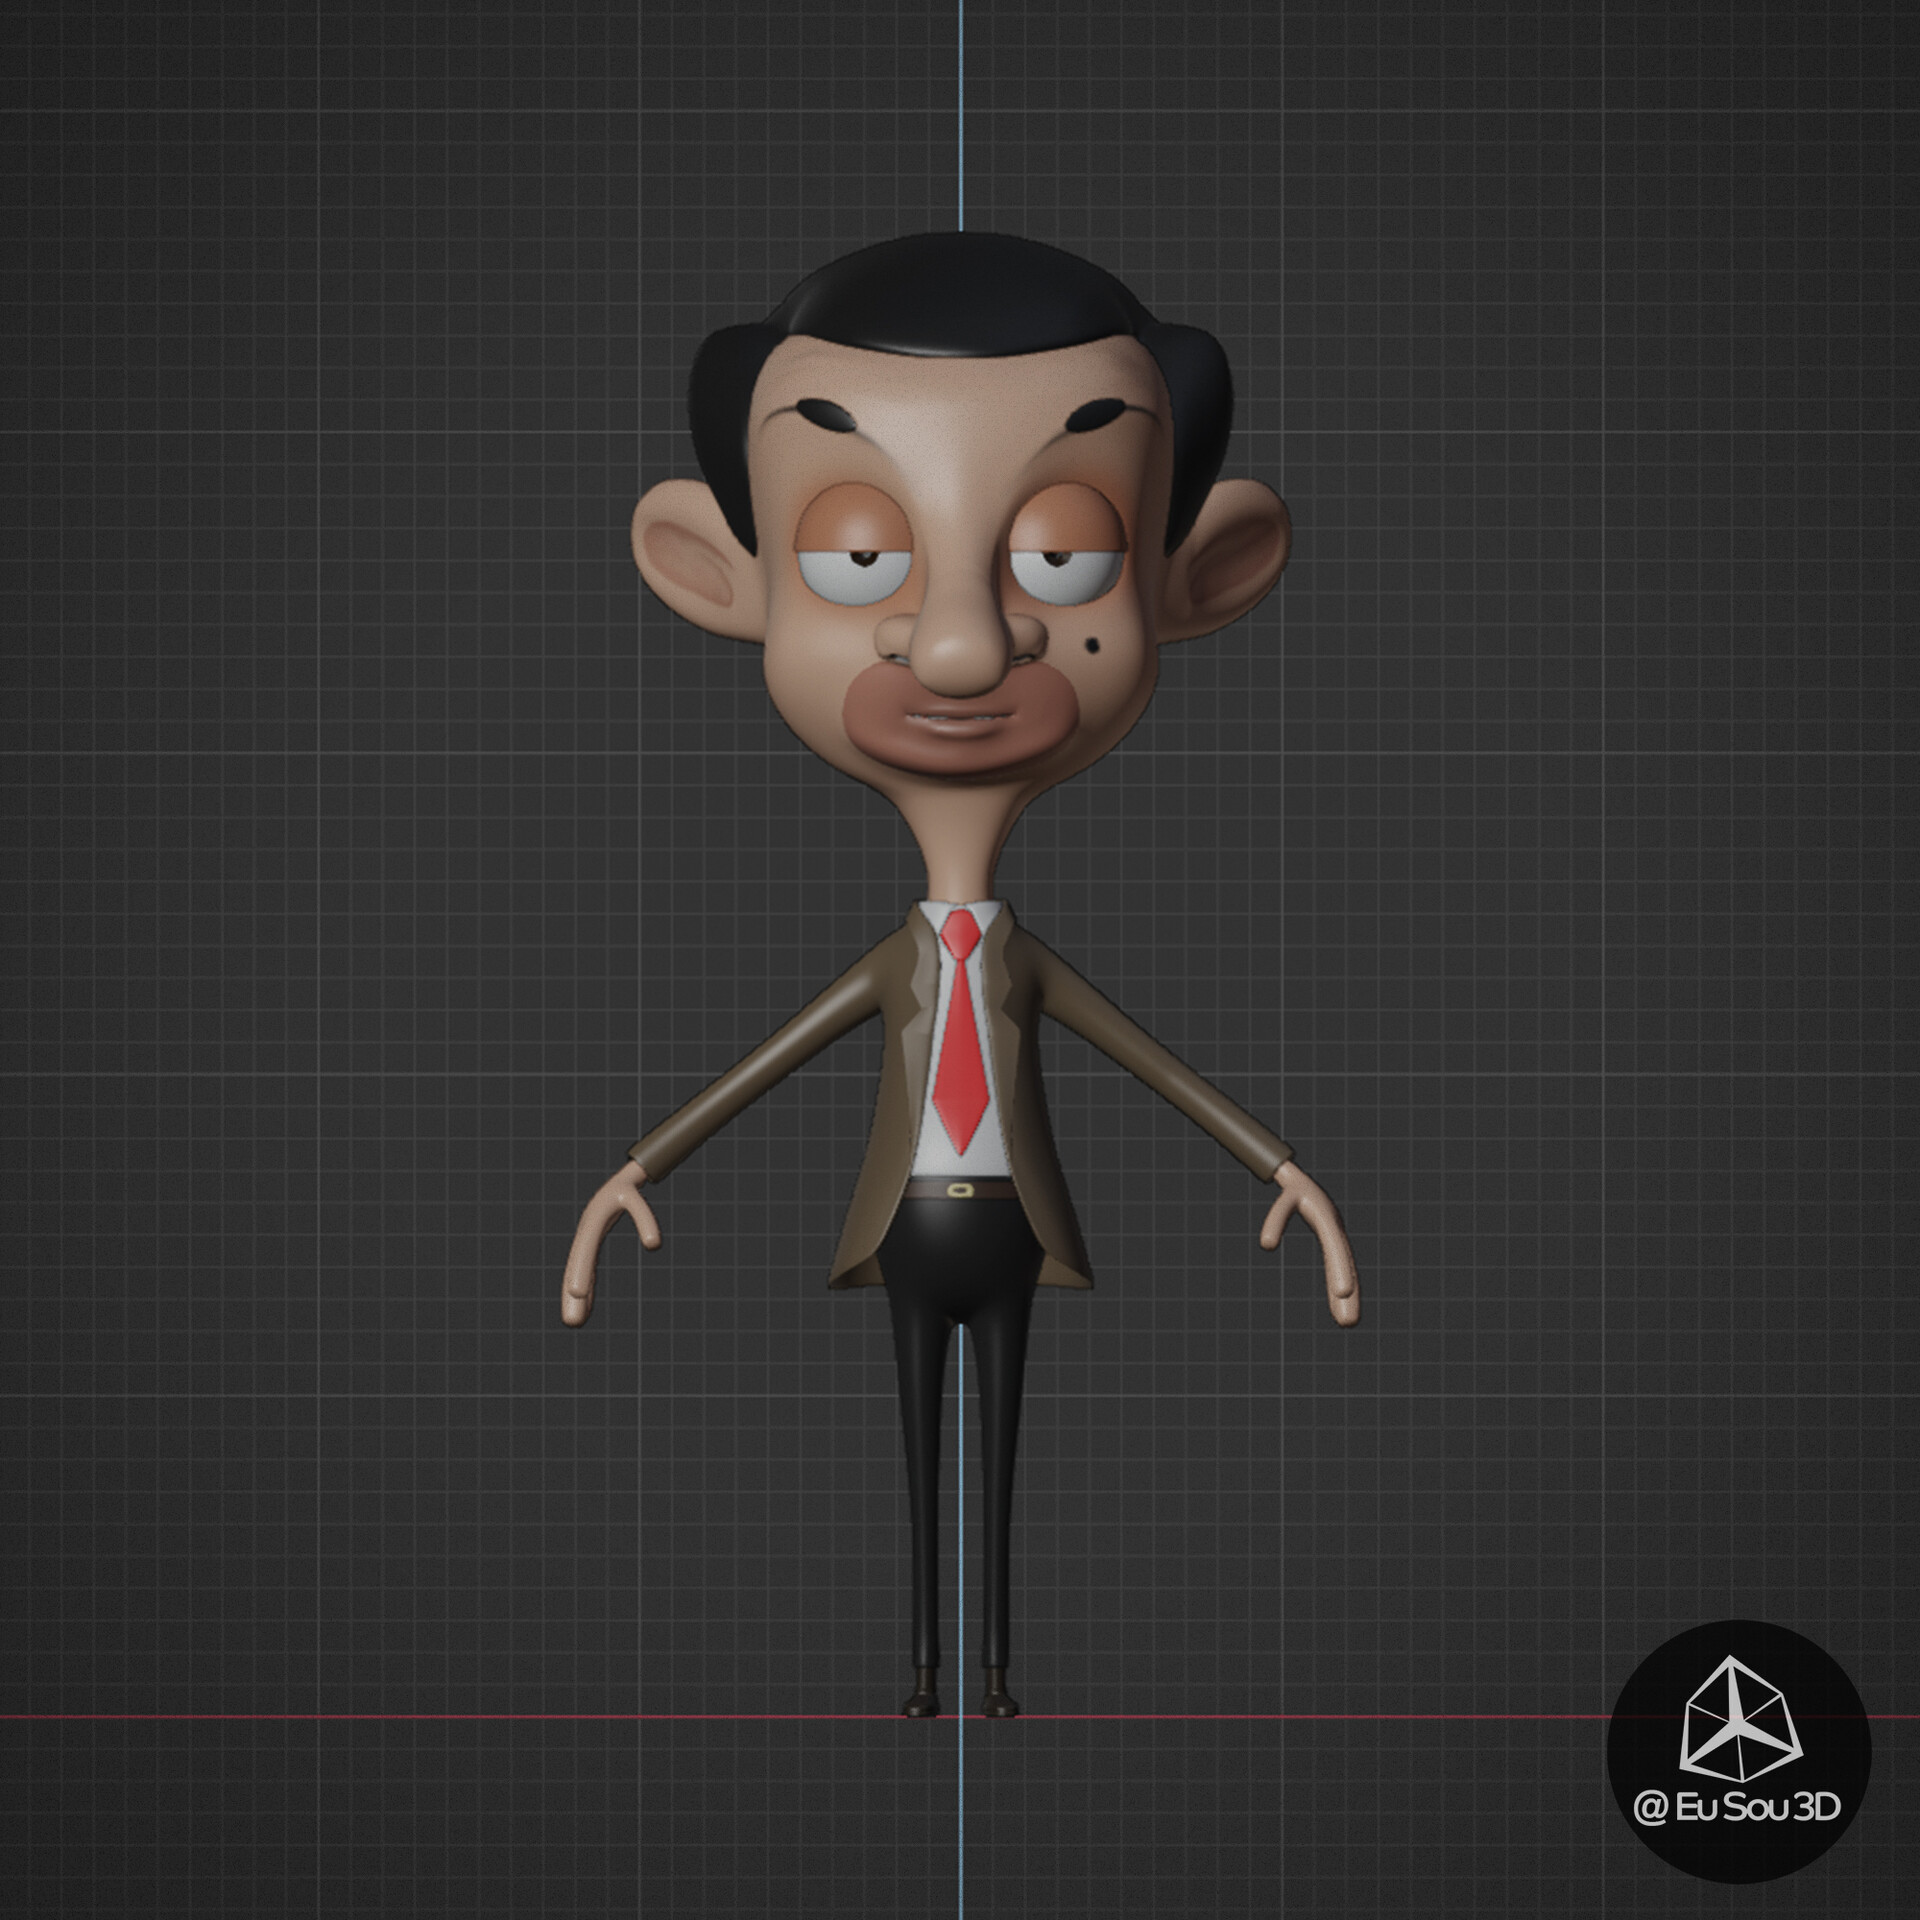 ArtStation - Mr Bean from 2d cartoon - Fan Art